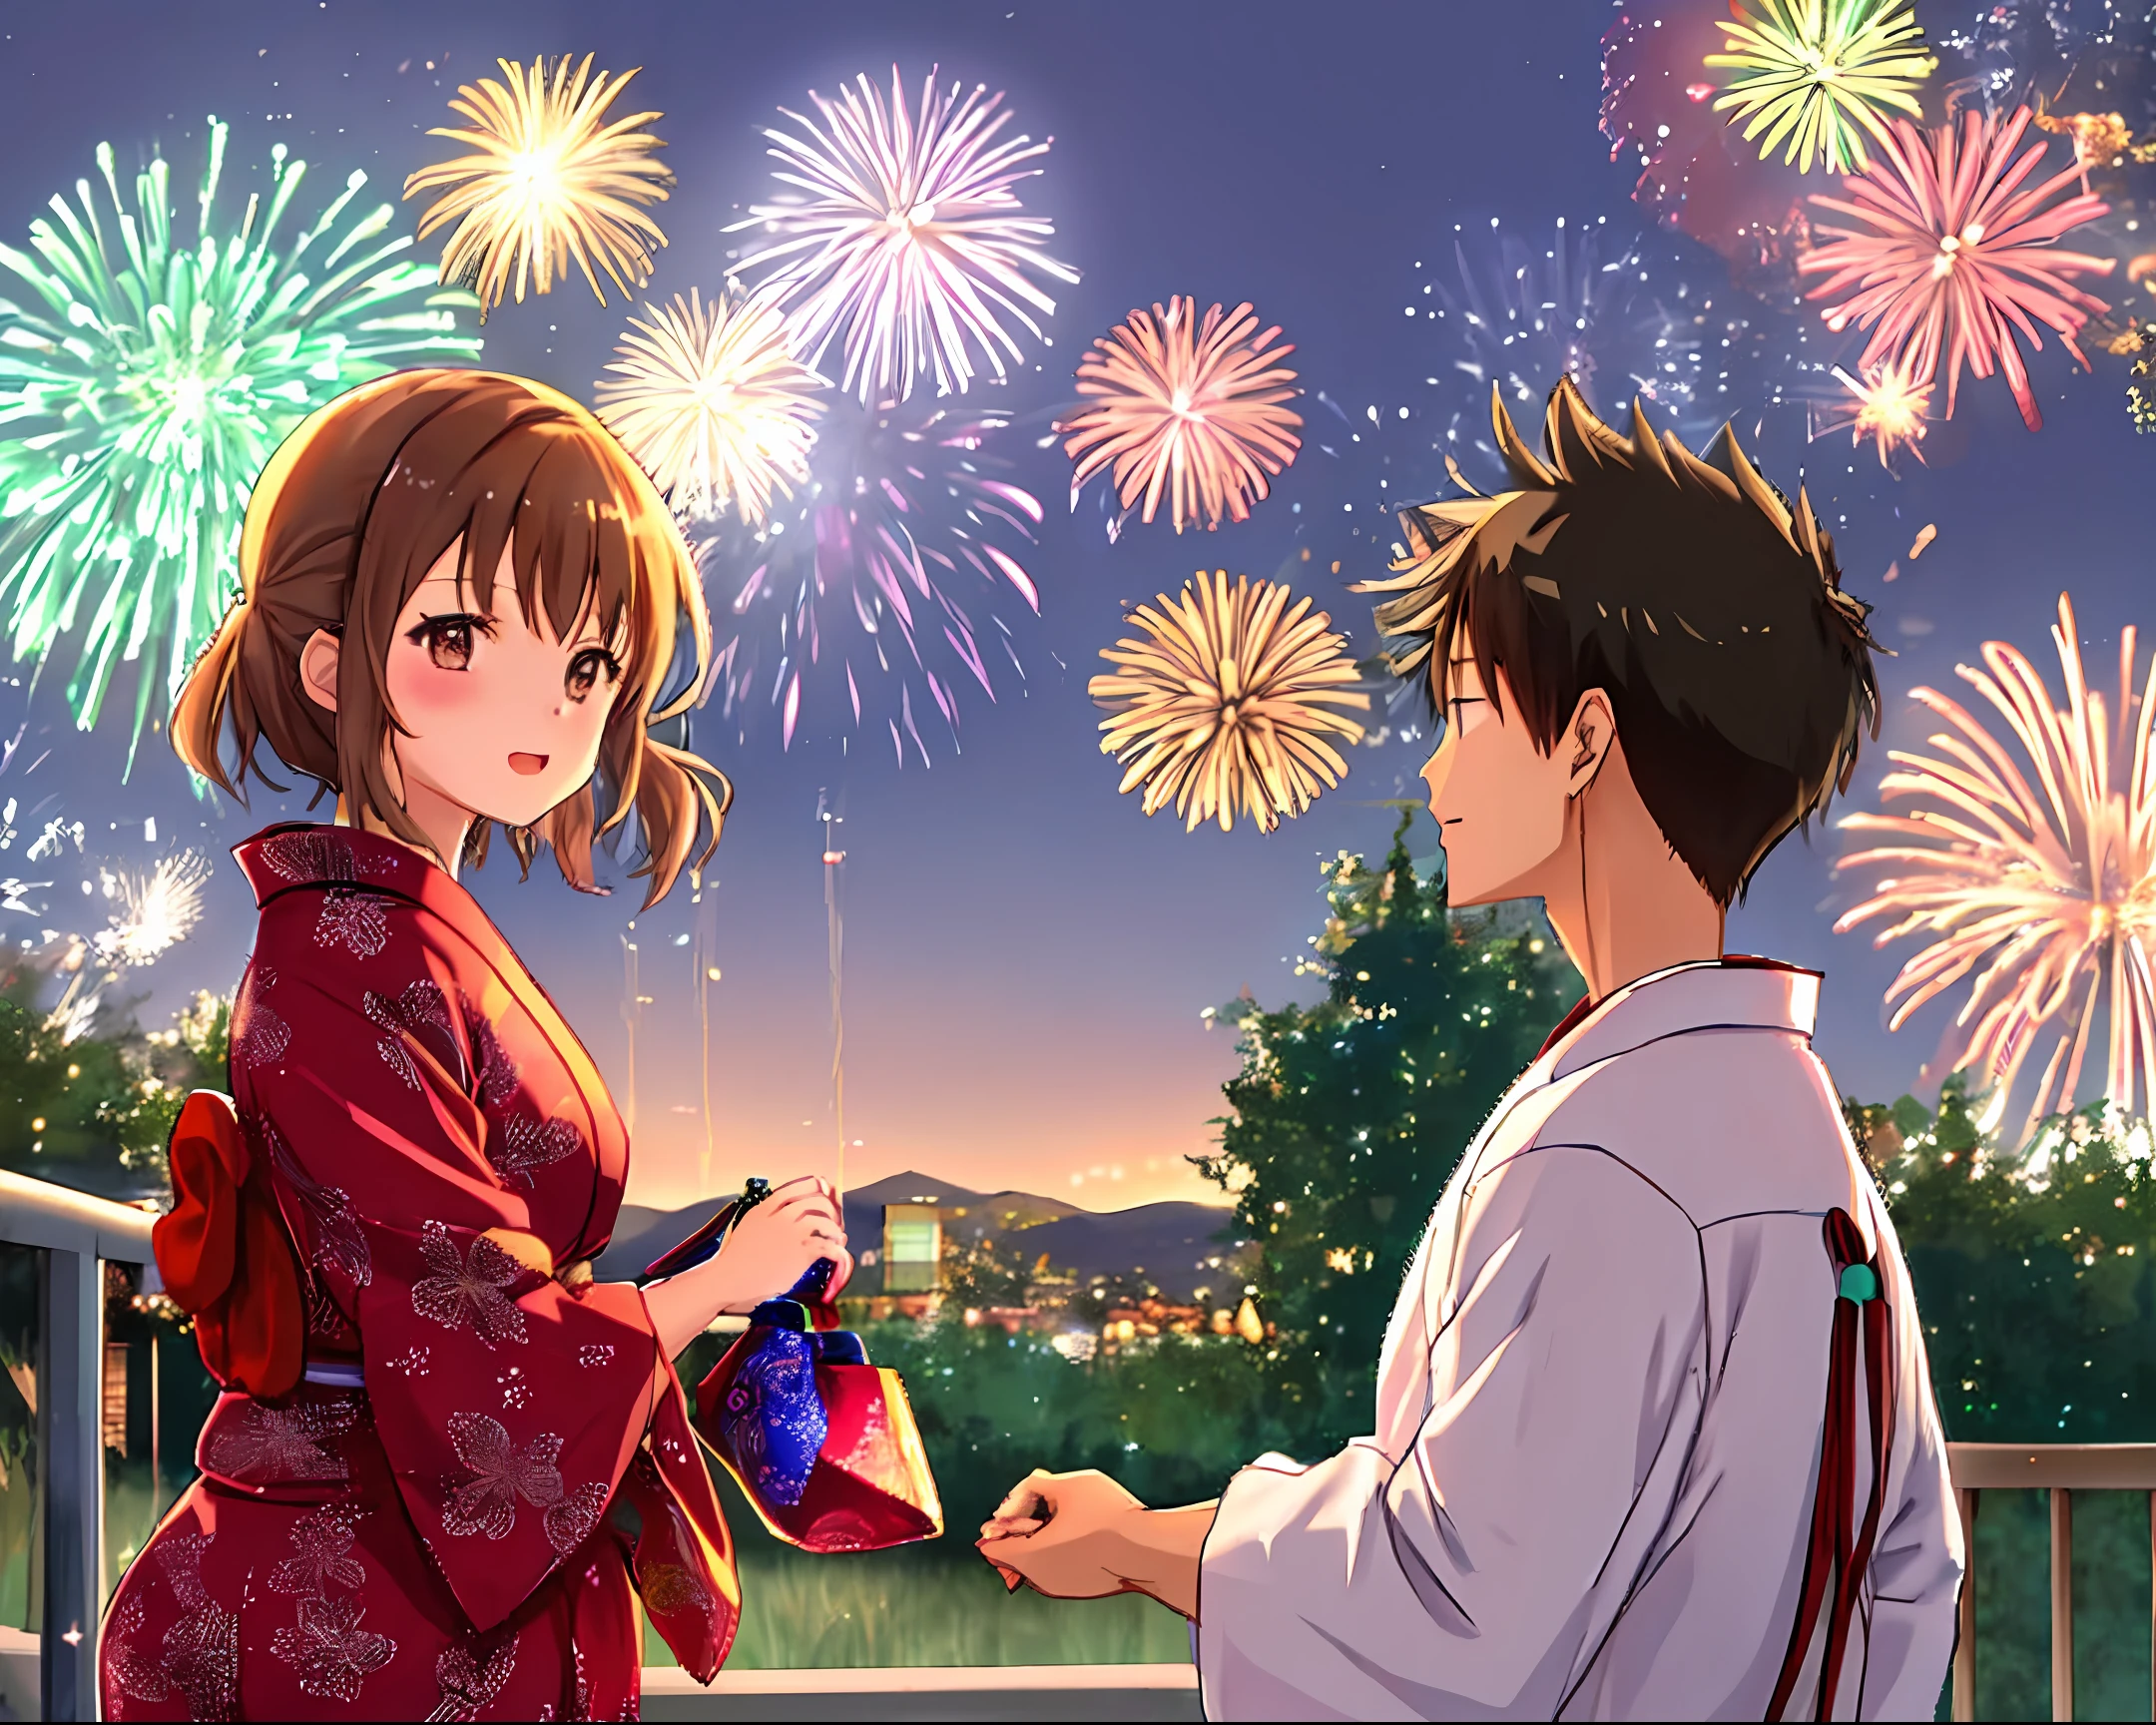 Una chica con yukata y un chico con yukata se dan la mano. Los fuegos artificiales suenan detrás de esos dos.